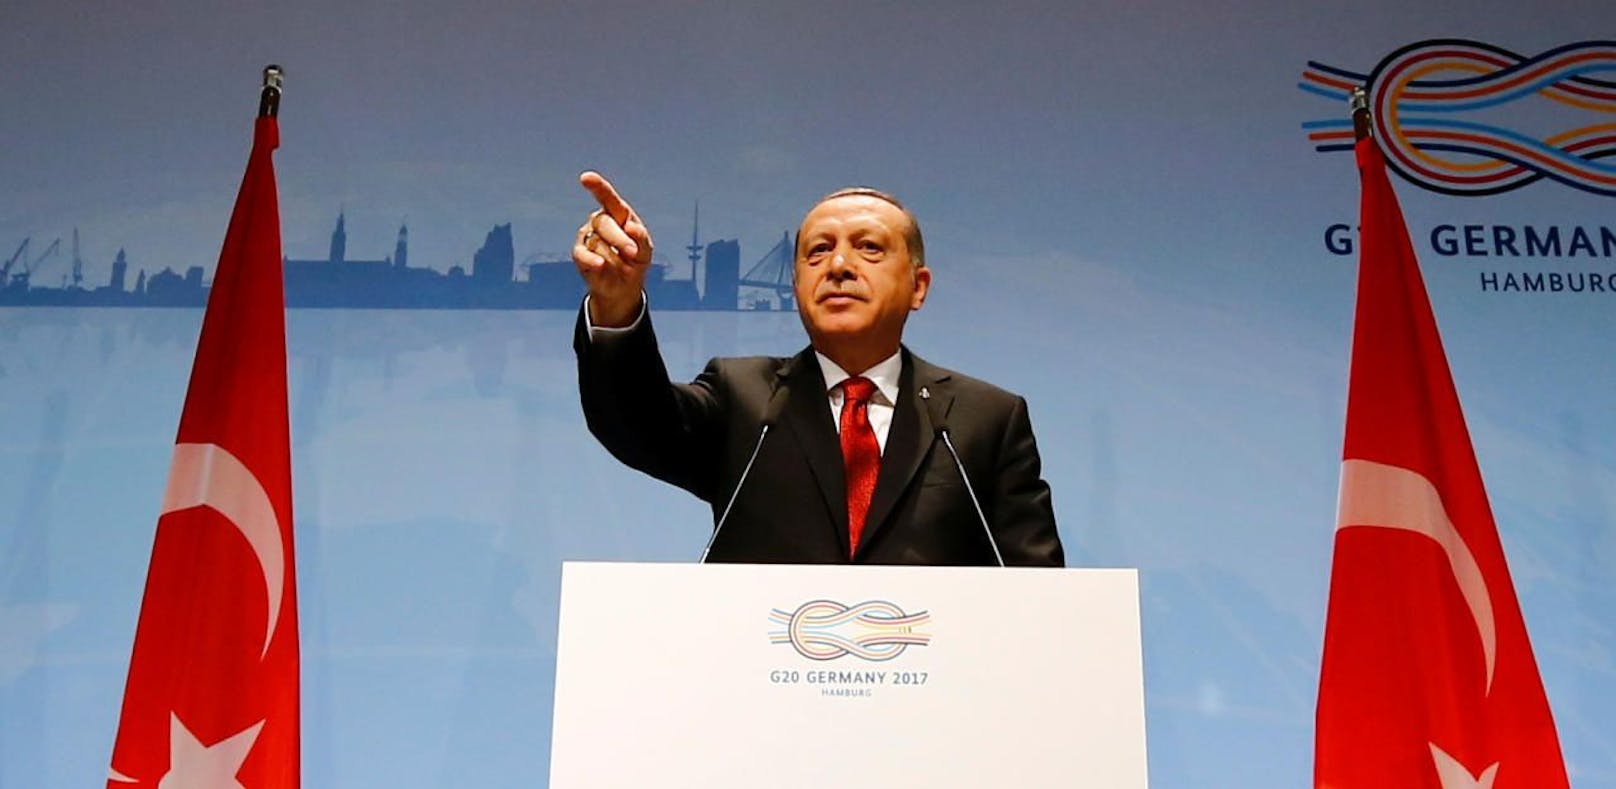 Recep Tayyip Erdogan war zuletzt beim G20-Gipfel in Hamburg in Deutschland.